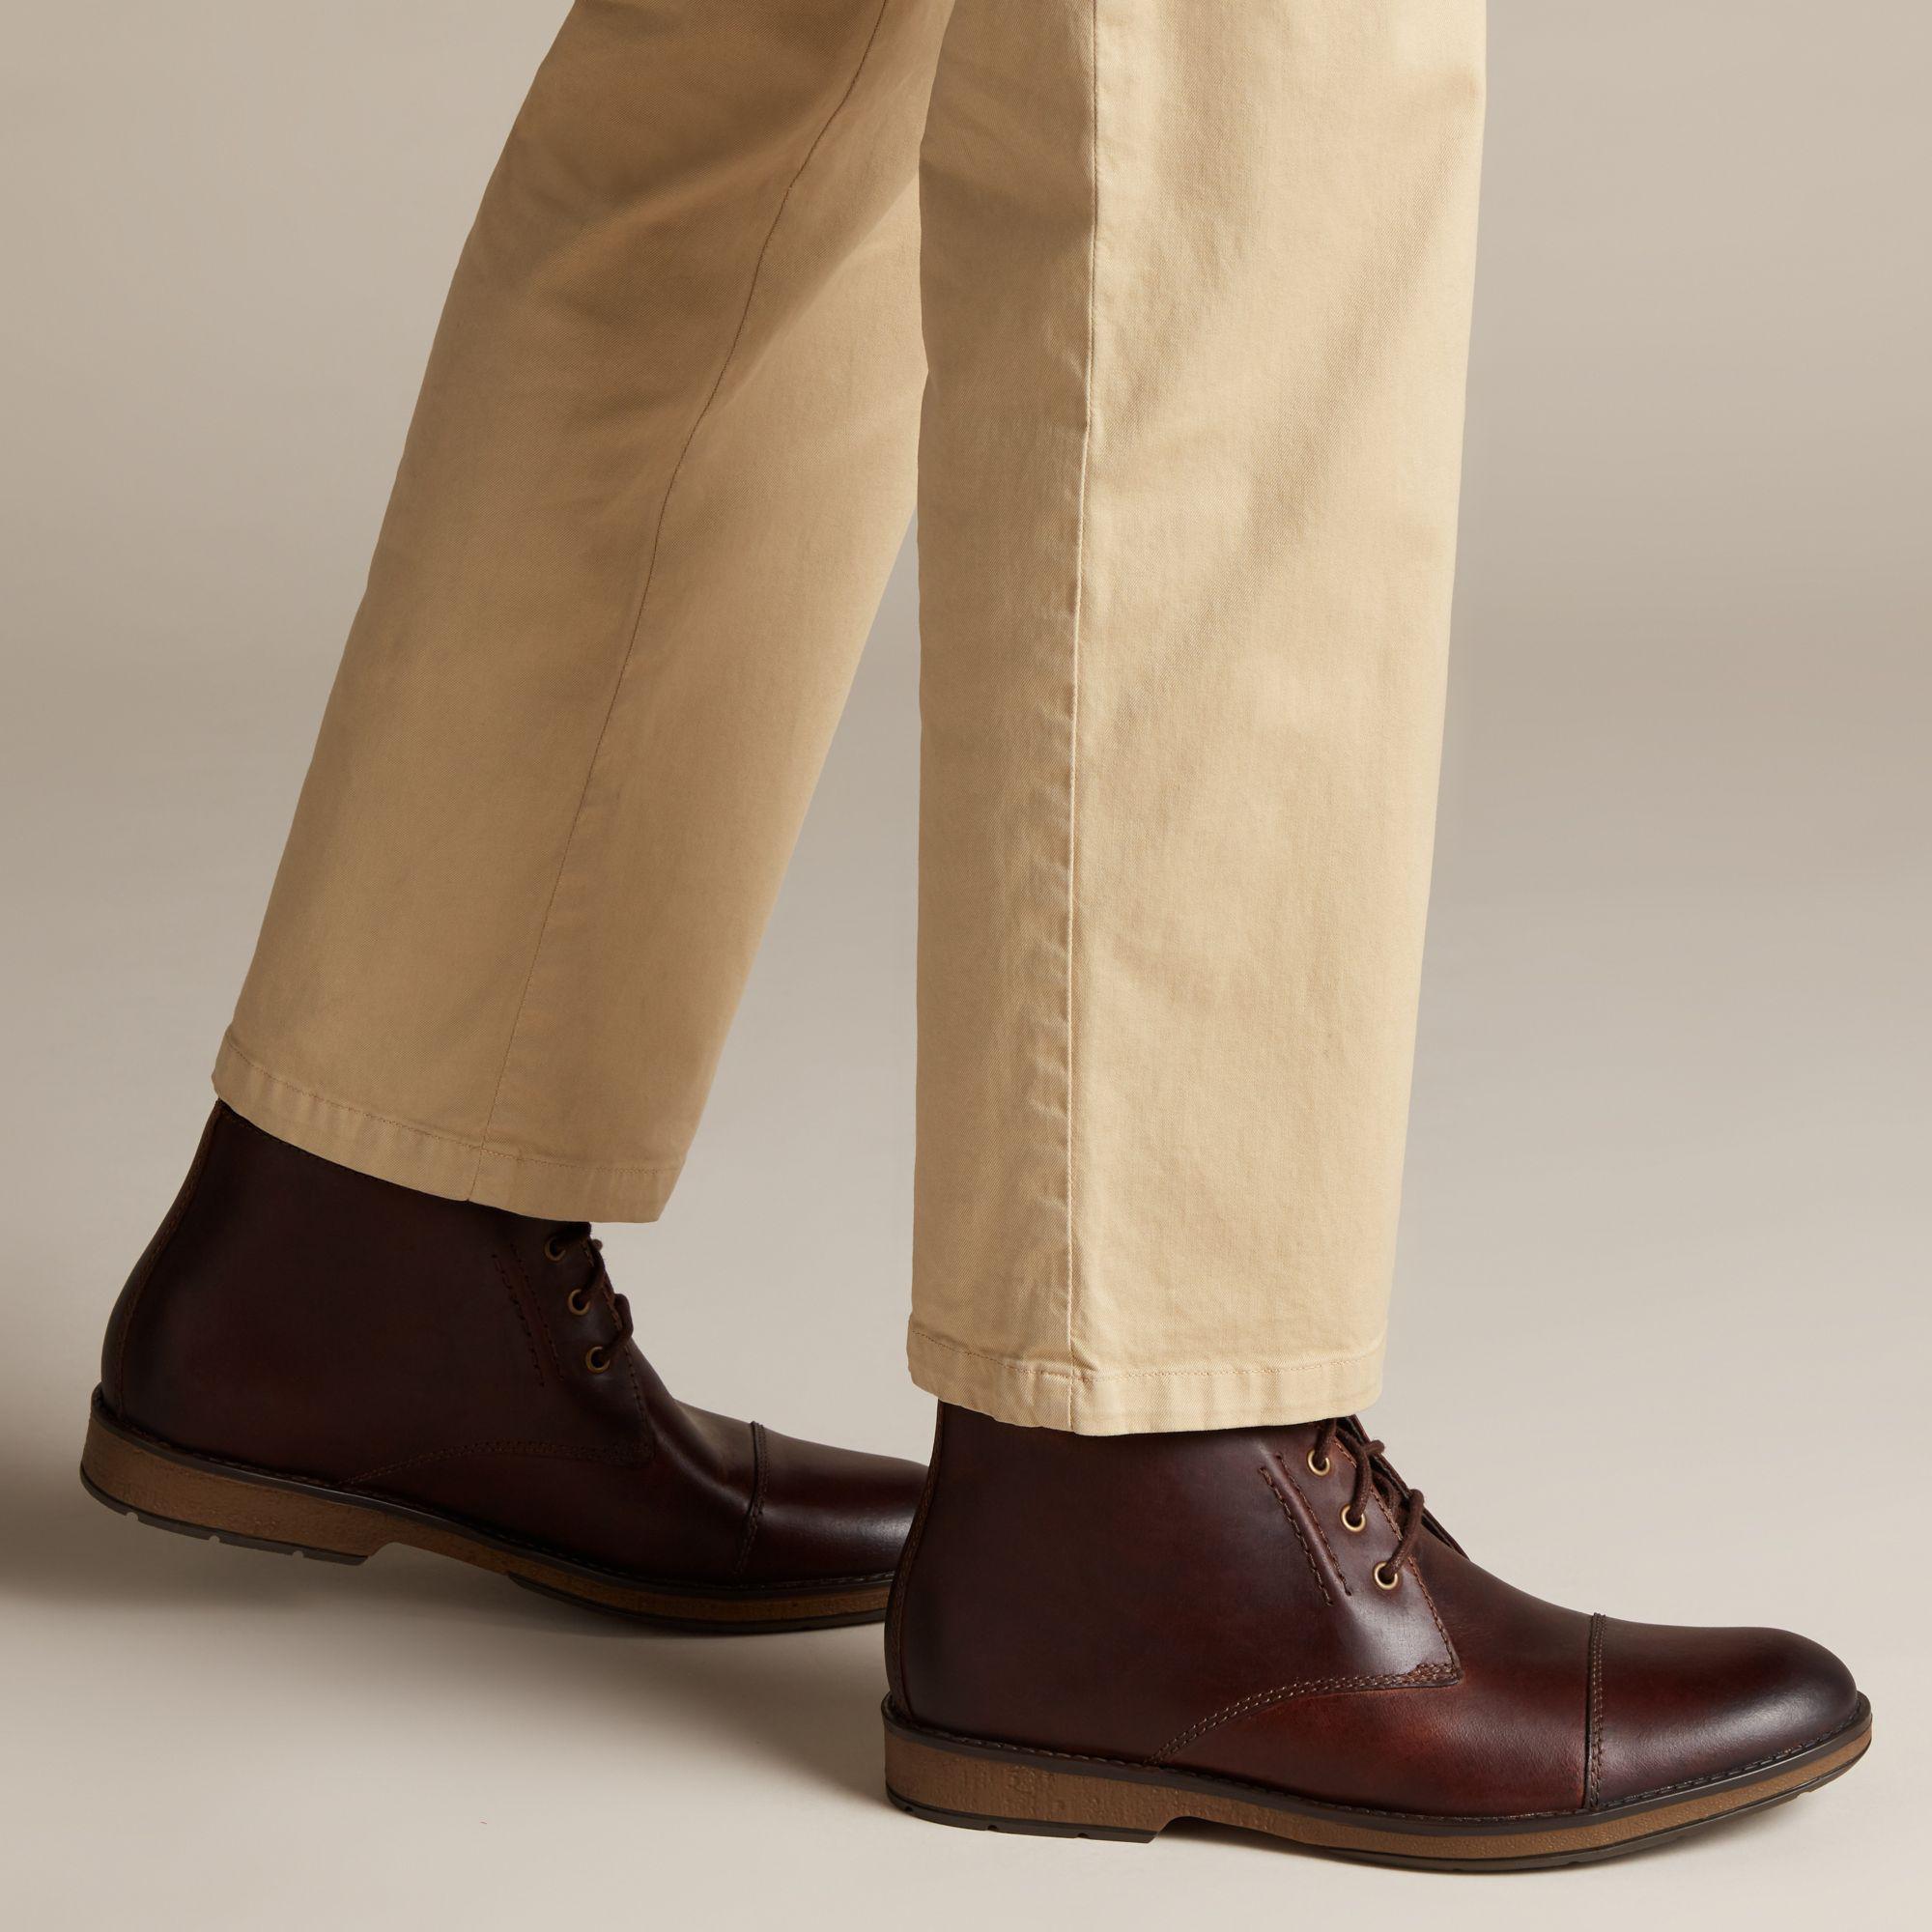 hinman leather mid chukka boots